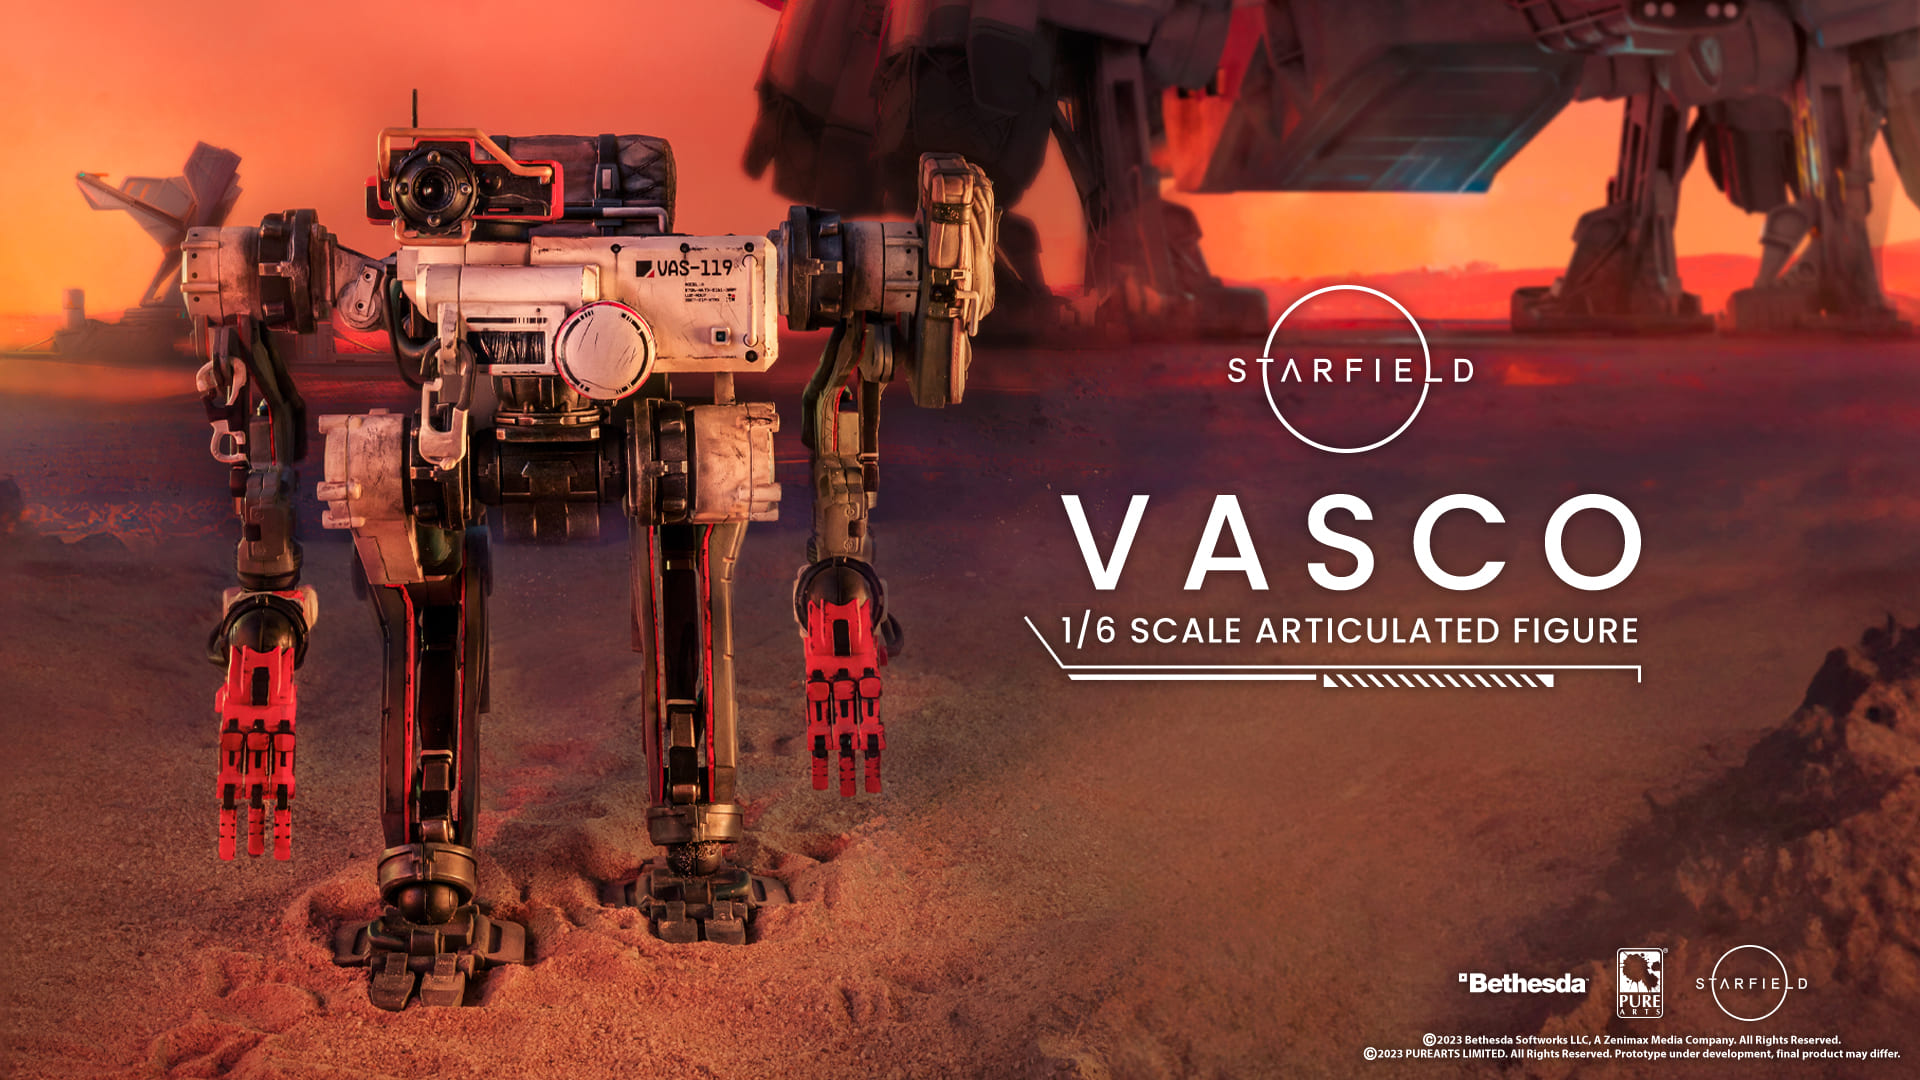 《星空》機器人同伴瓦斯科模型正式公佈